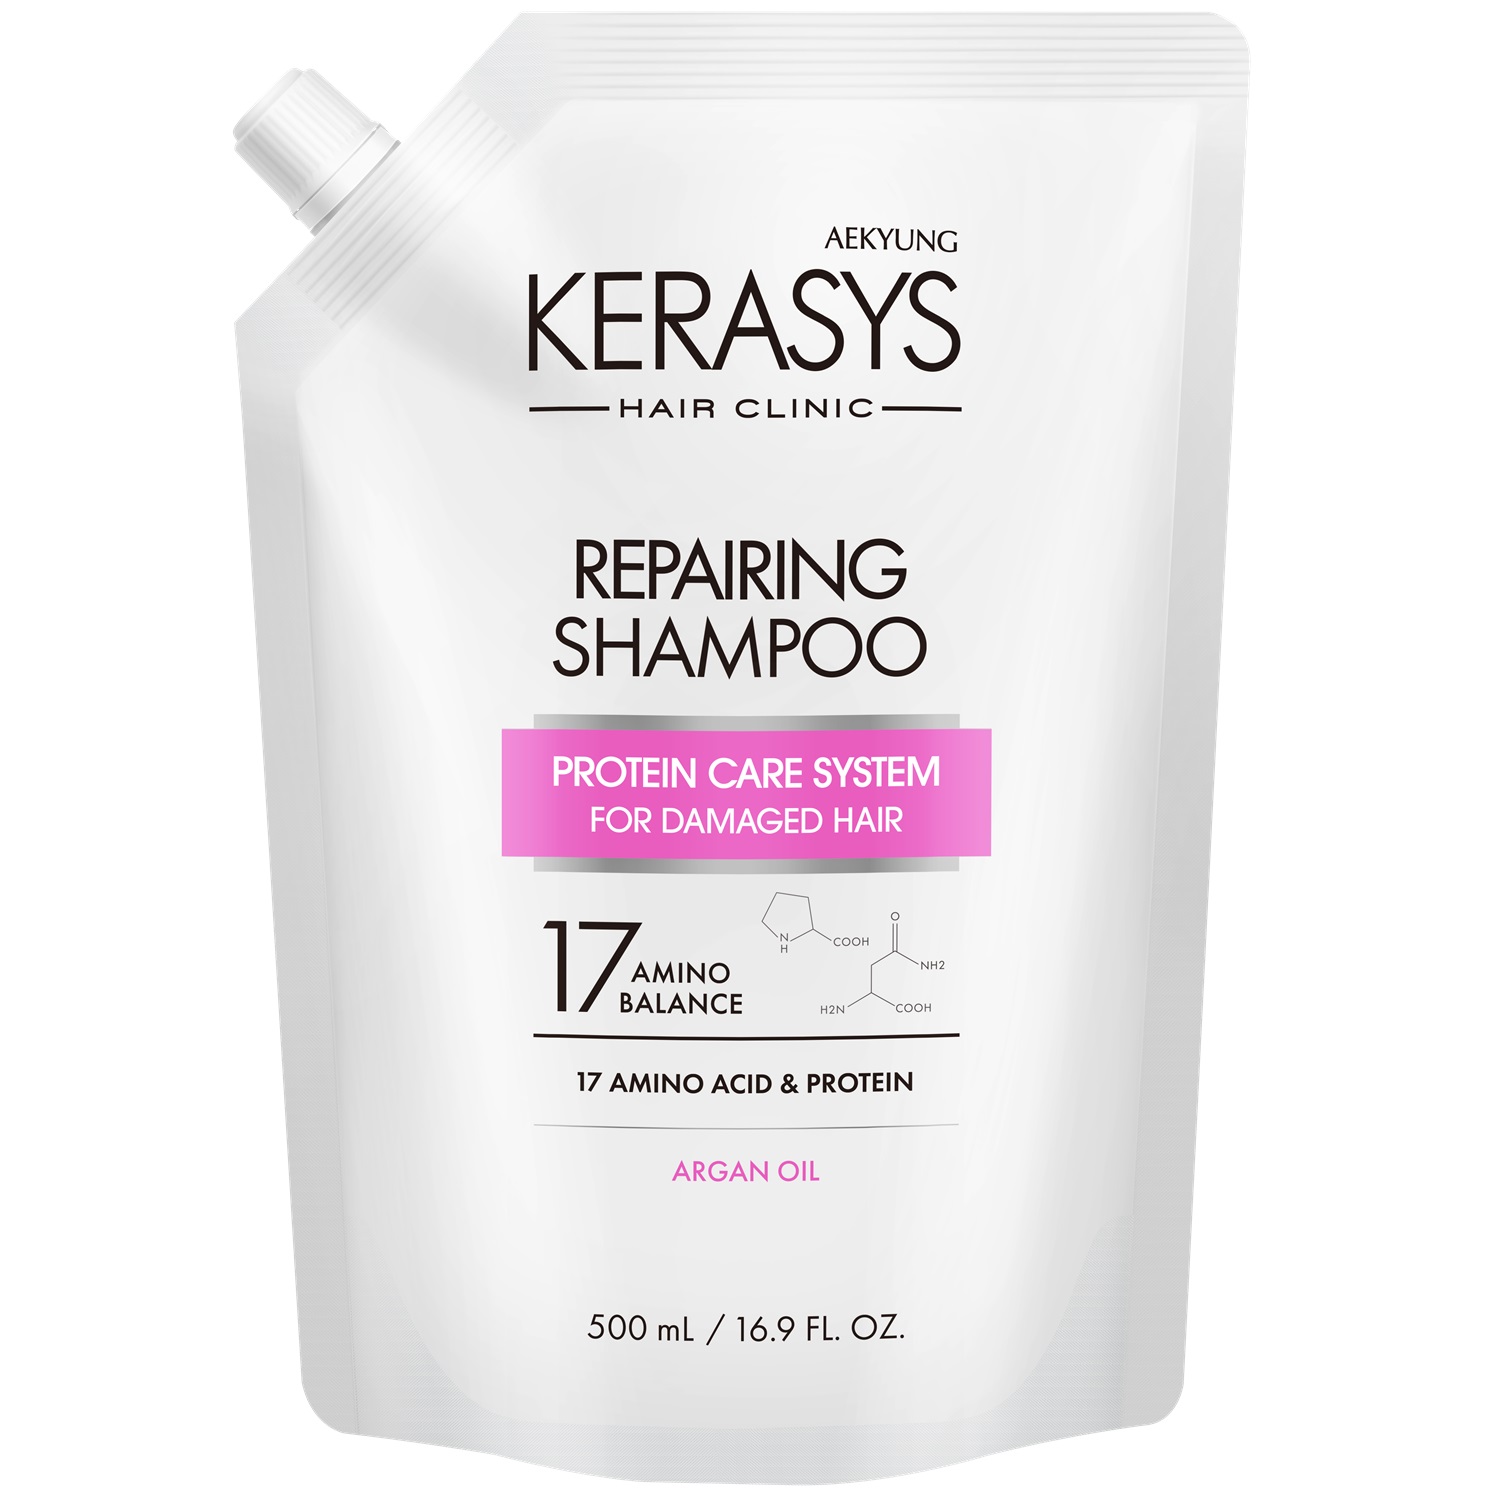 Kerasys Шампунь для волос восстанавливающий, запасной блок 500 мл (Kerasys, Hair Clinic) kerasys шампунь для волос восстанавливающий запасной блок 500 мл kerasys hair clinic